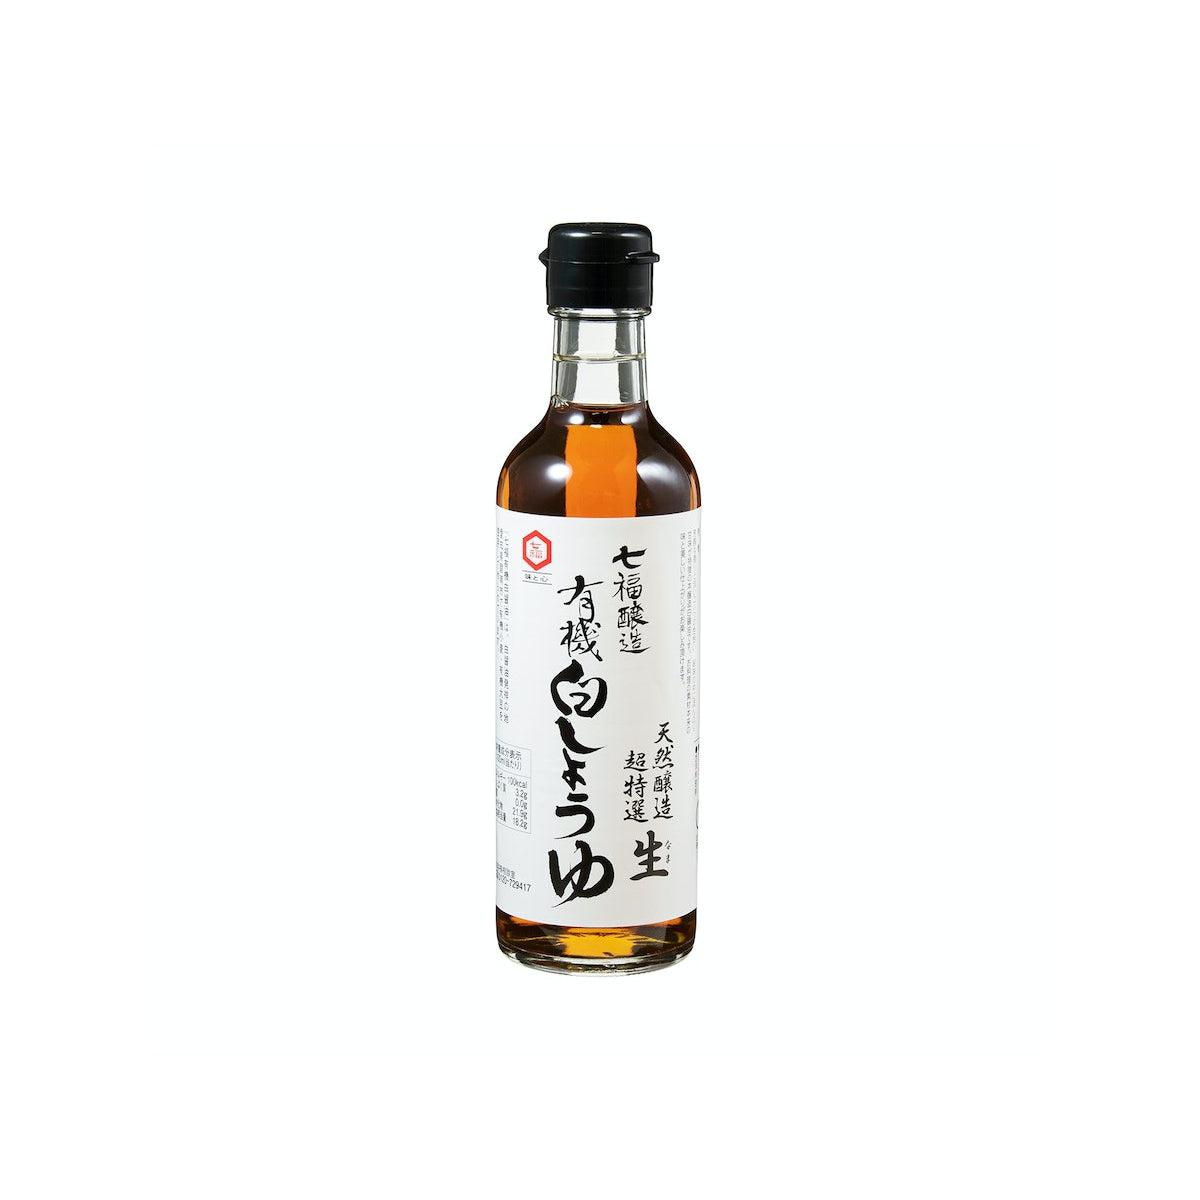 Hichifuku Organic Shiro Shoyu Japanese White Soy Sauce 300ml